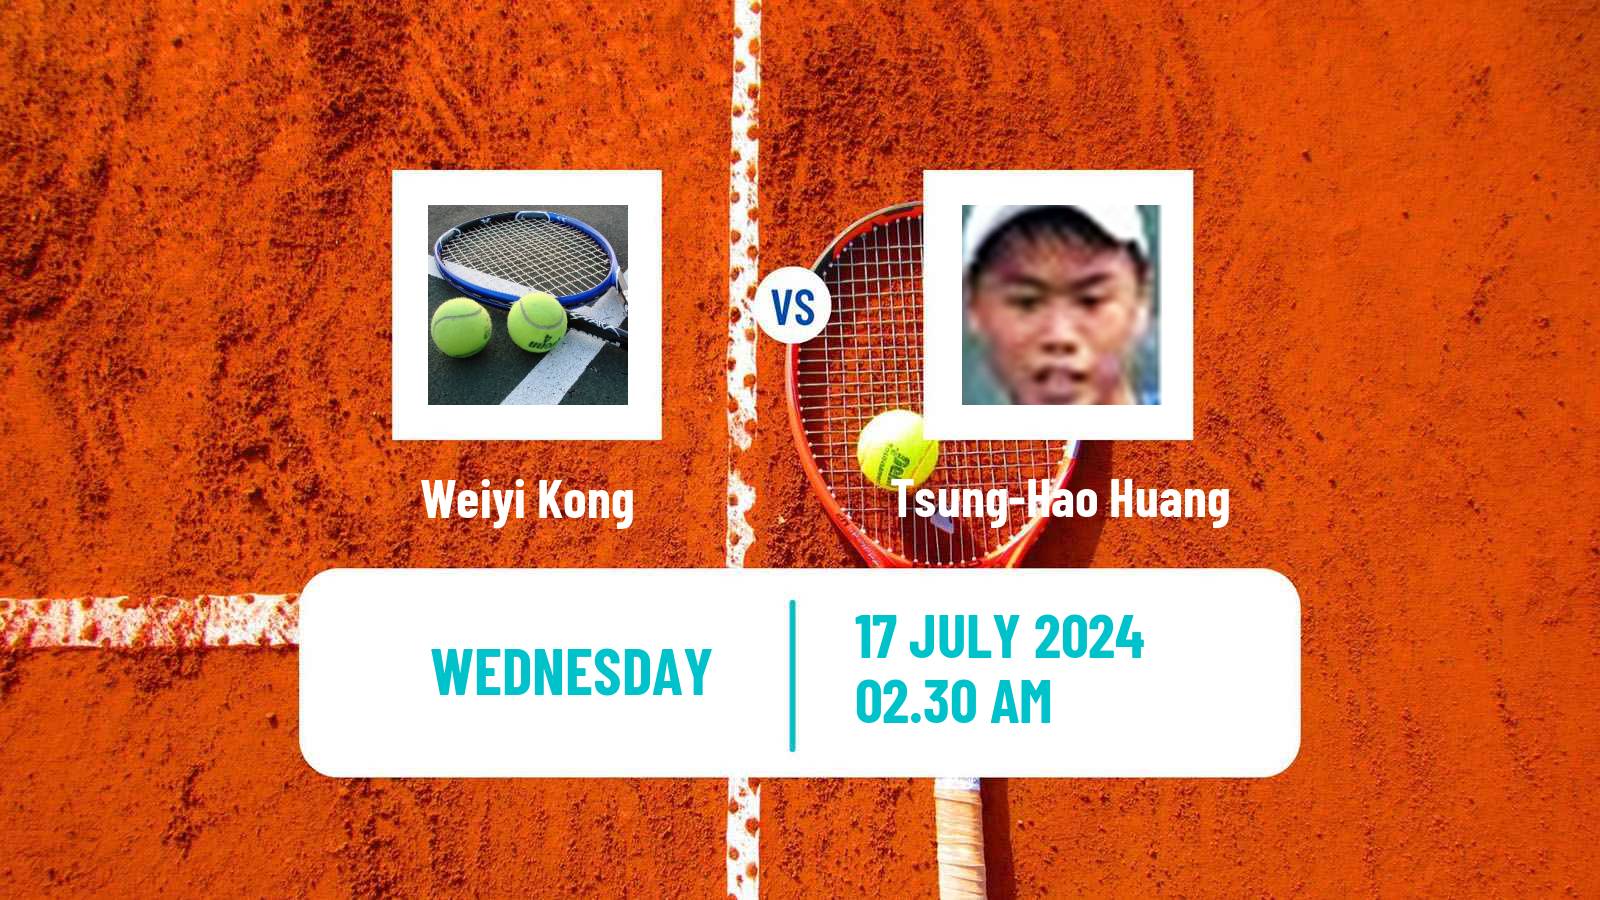 Tennis ITF M25 Tianjin 2 Men Weiyi Kong - Tsung-Hao Huang